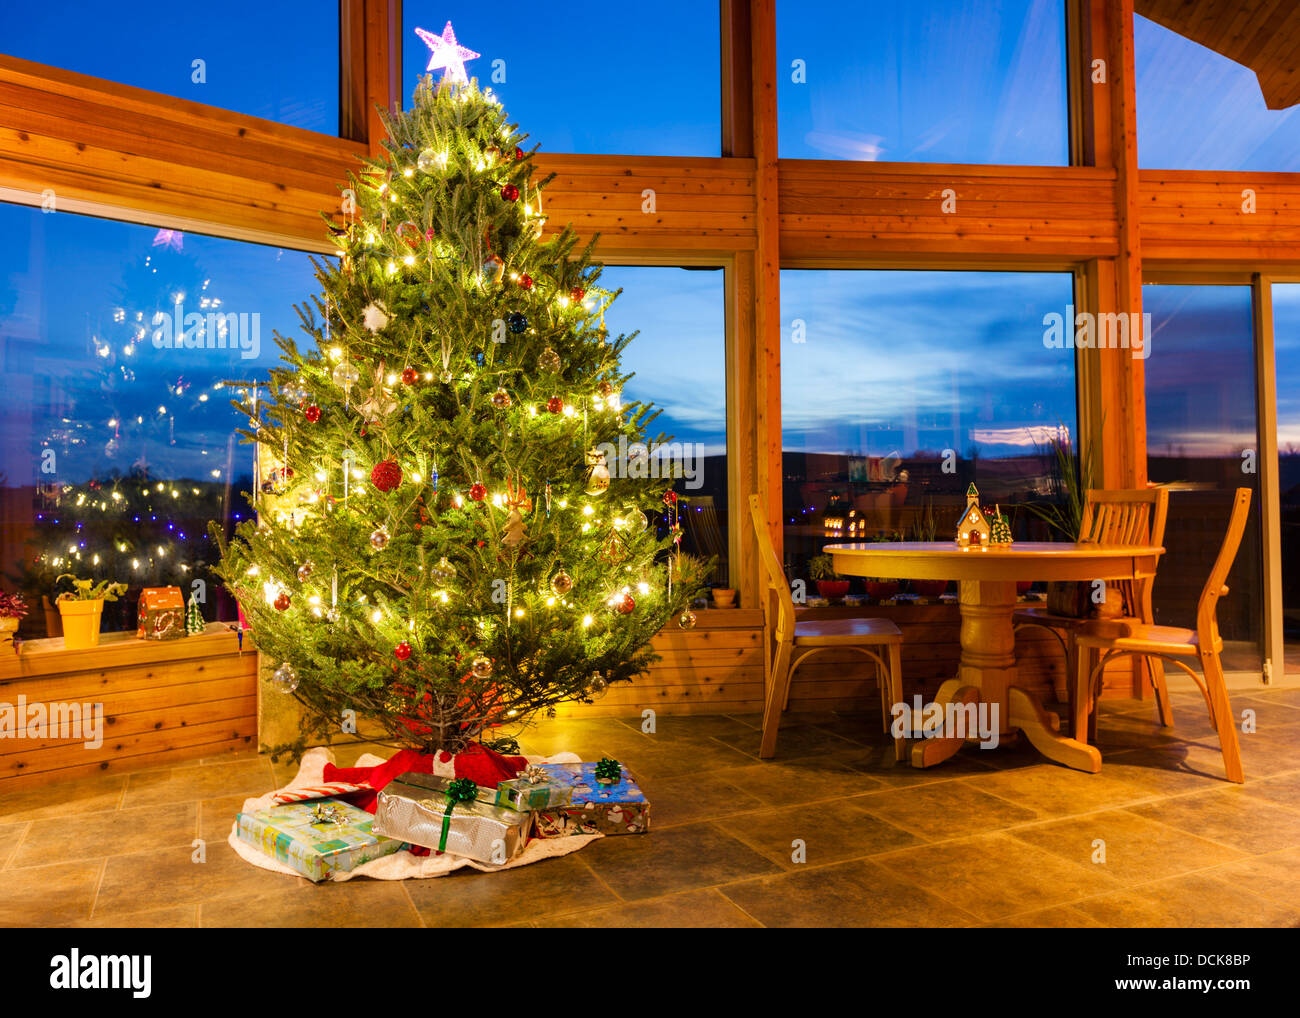 Weihnachtsbaum in einem modernen Haus mit großen Fenstern Stockfoto